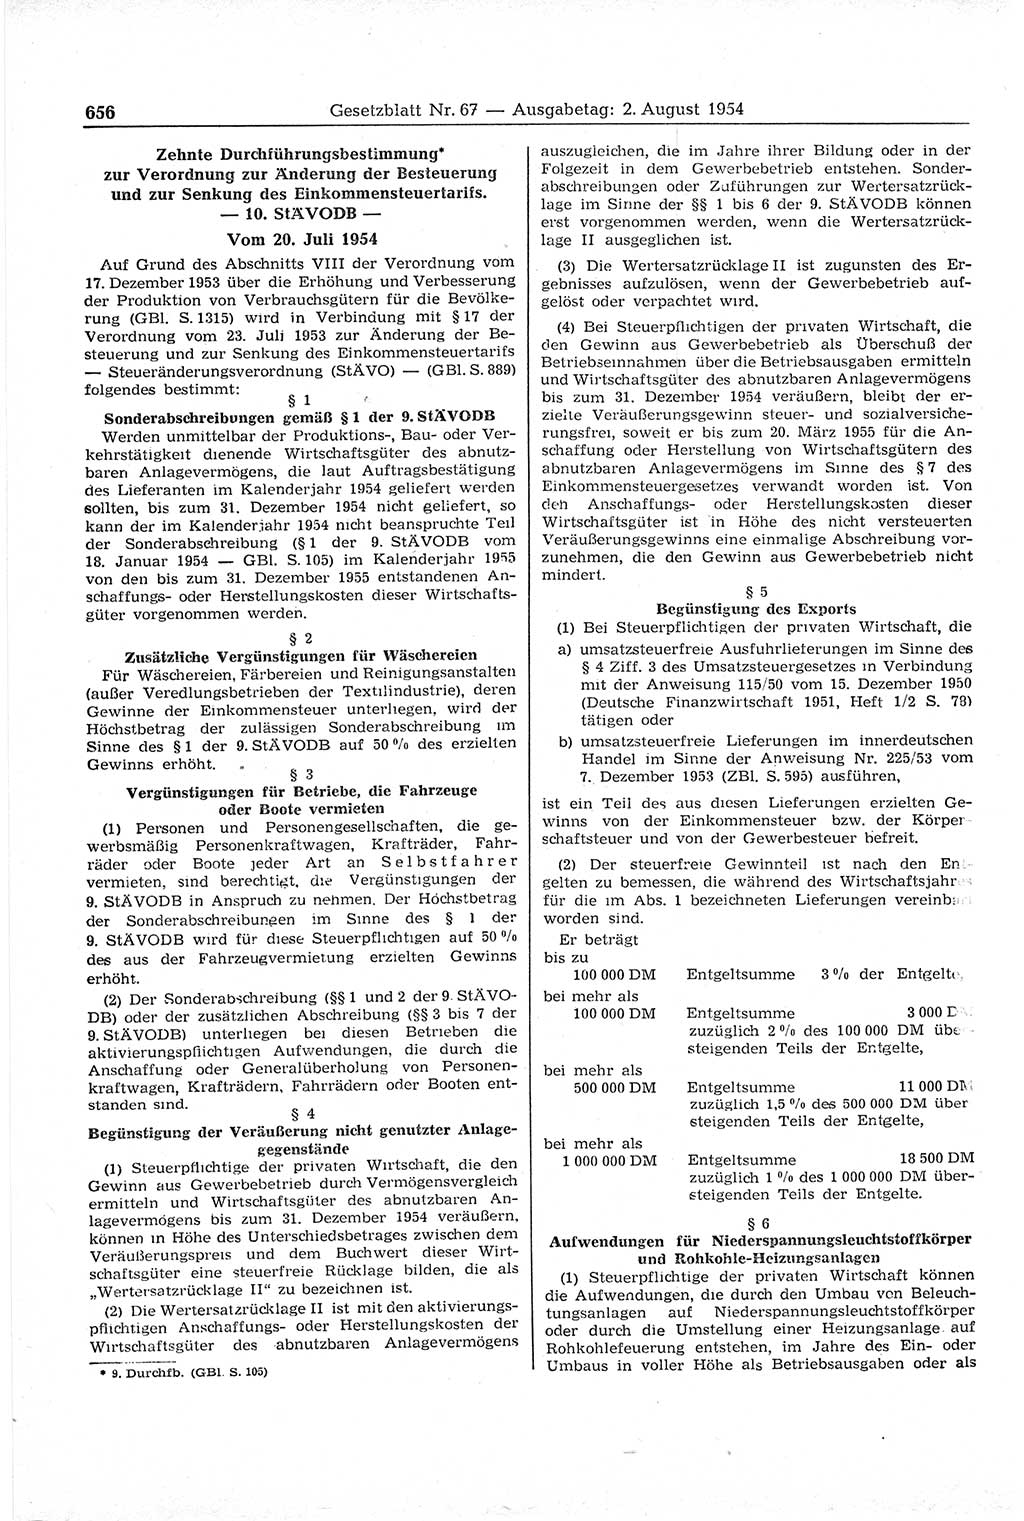 Gesetzblatt (GBl.) der Deutschen Demokratischen Republik (DDR) 1954, Seite 656 (GBl. DDR 1954, S. 656)